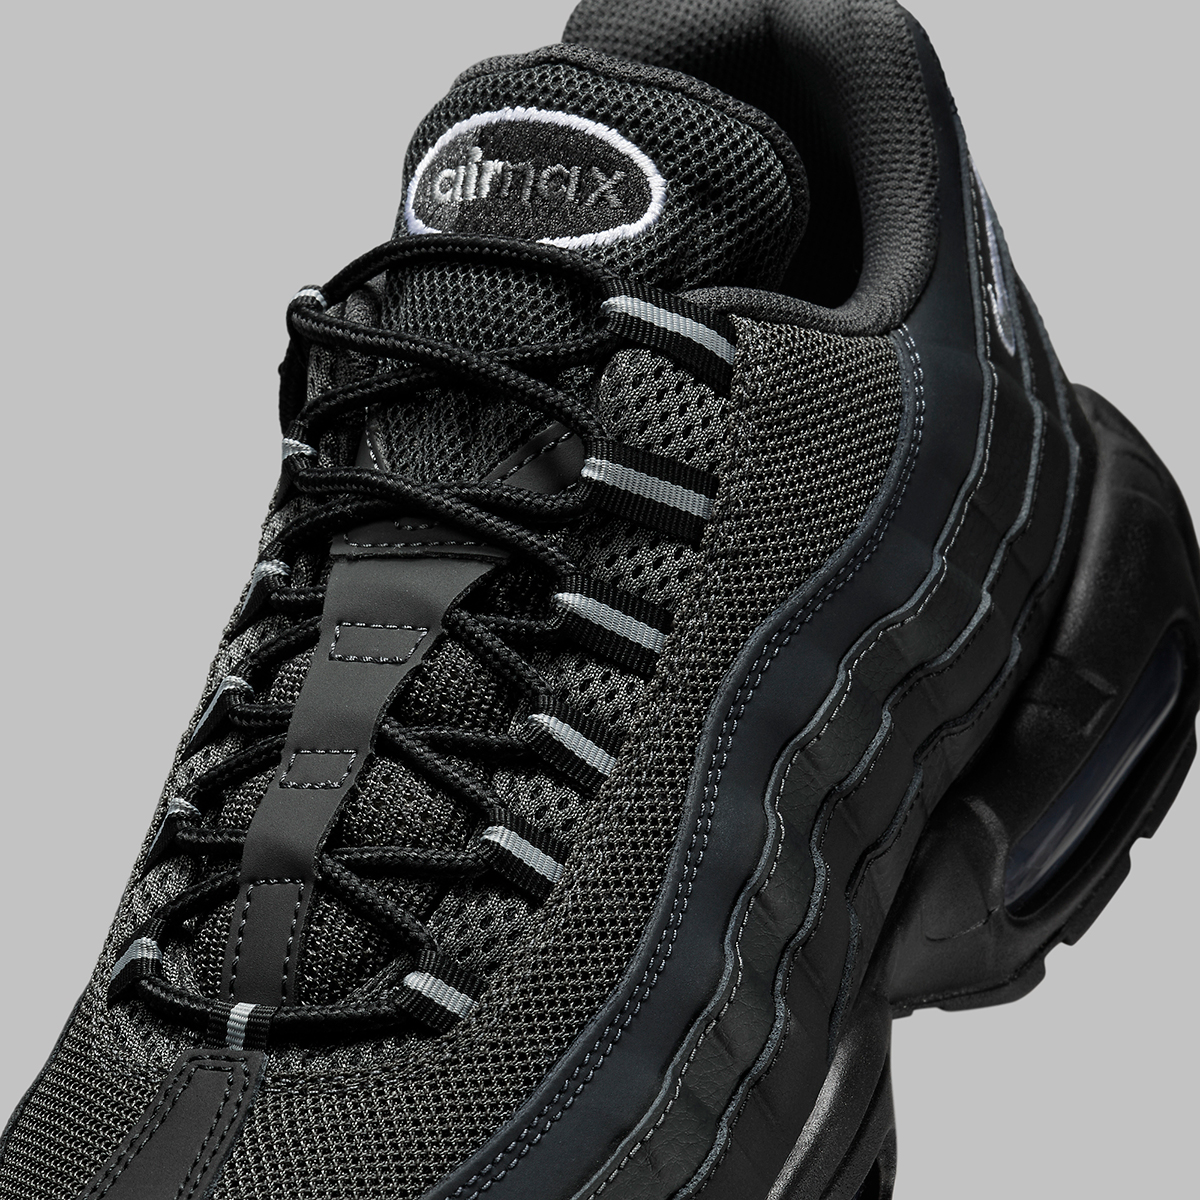 zapatillas de running Nike entrenamiento asfalto talla 23.5 más de 100 Black Grey Hf0121 002 6